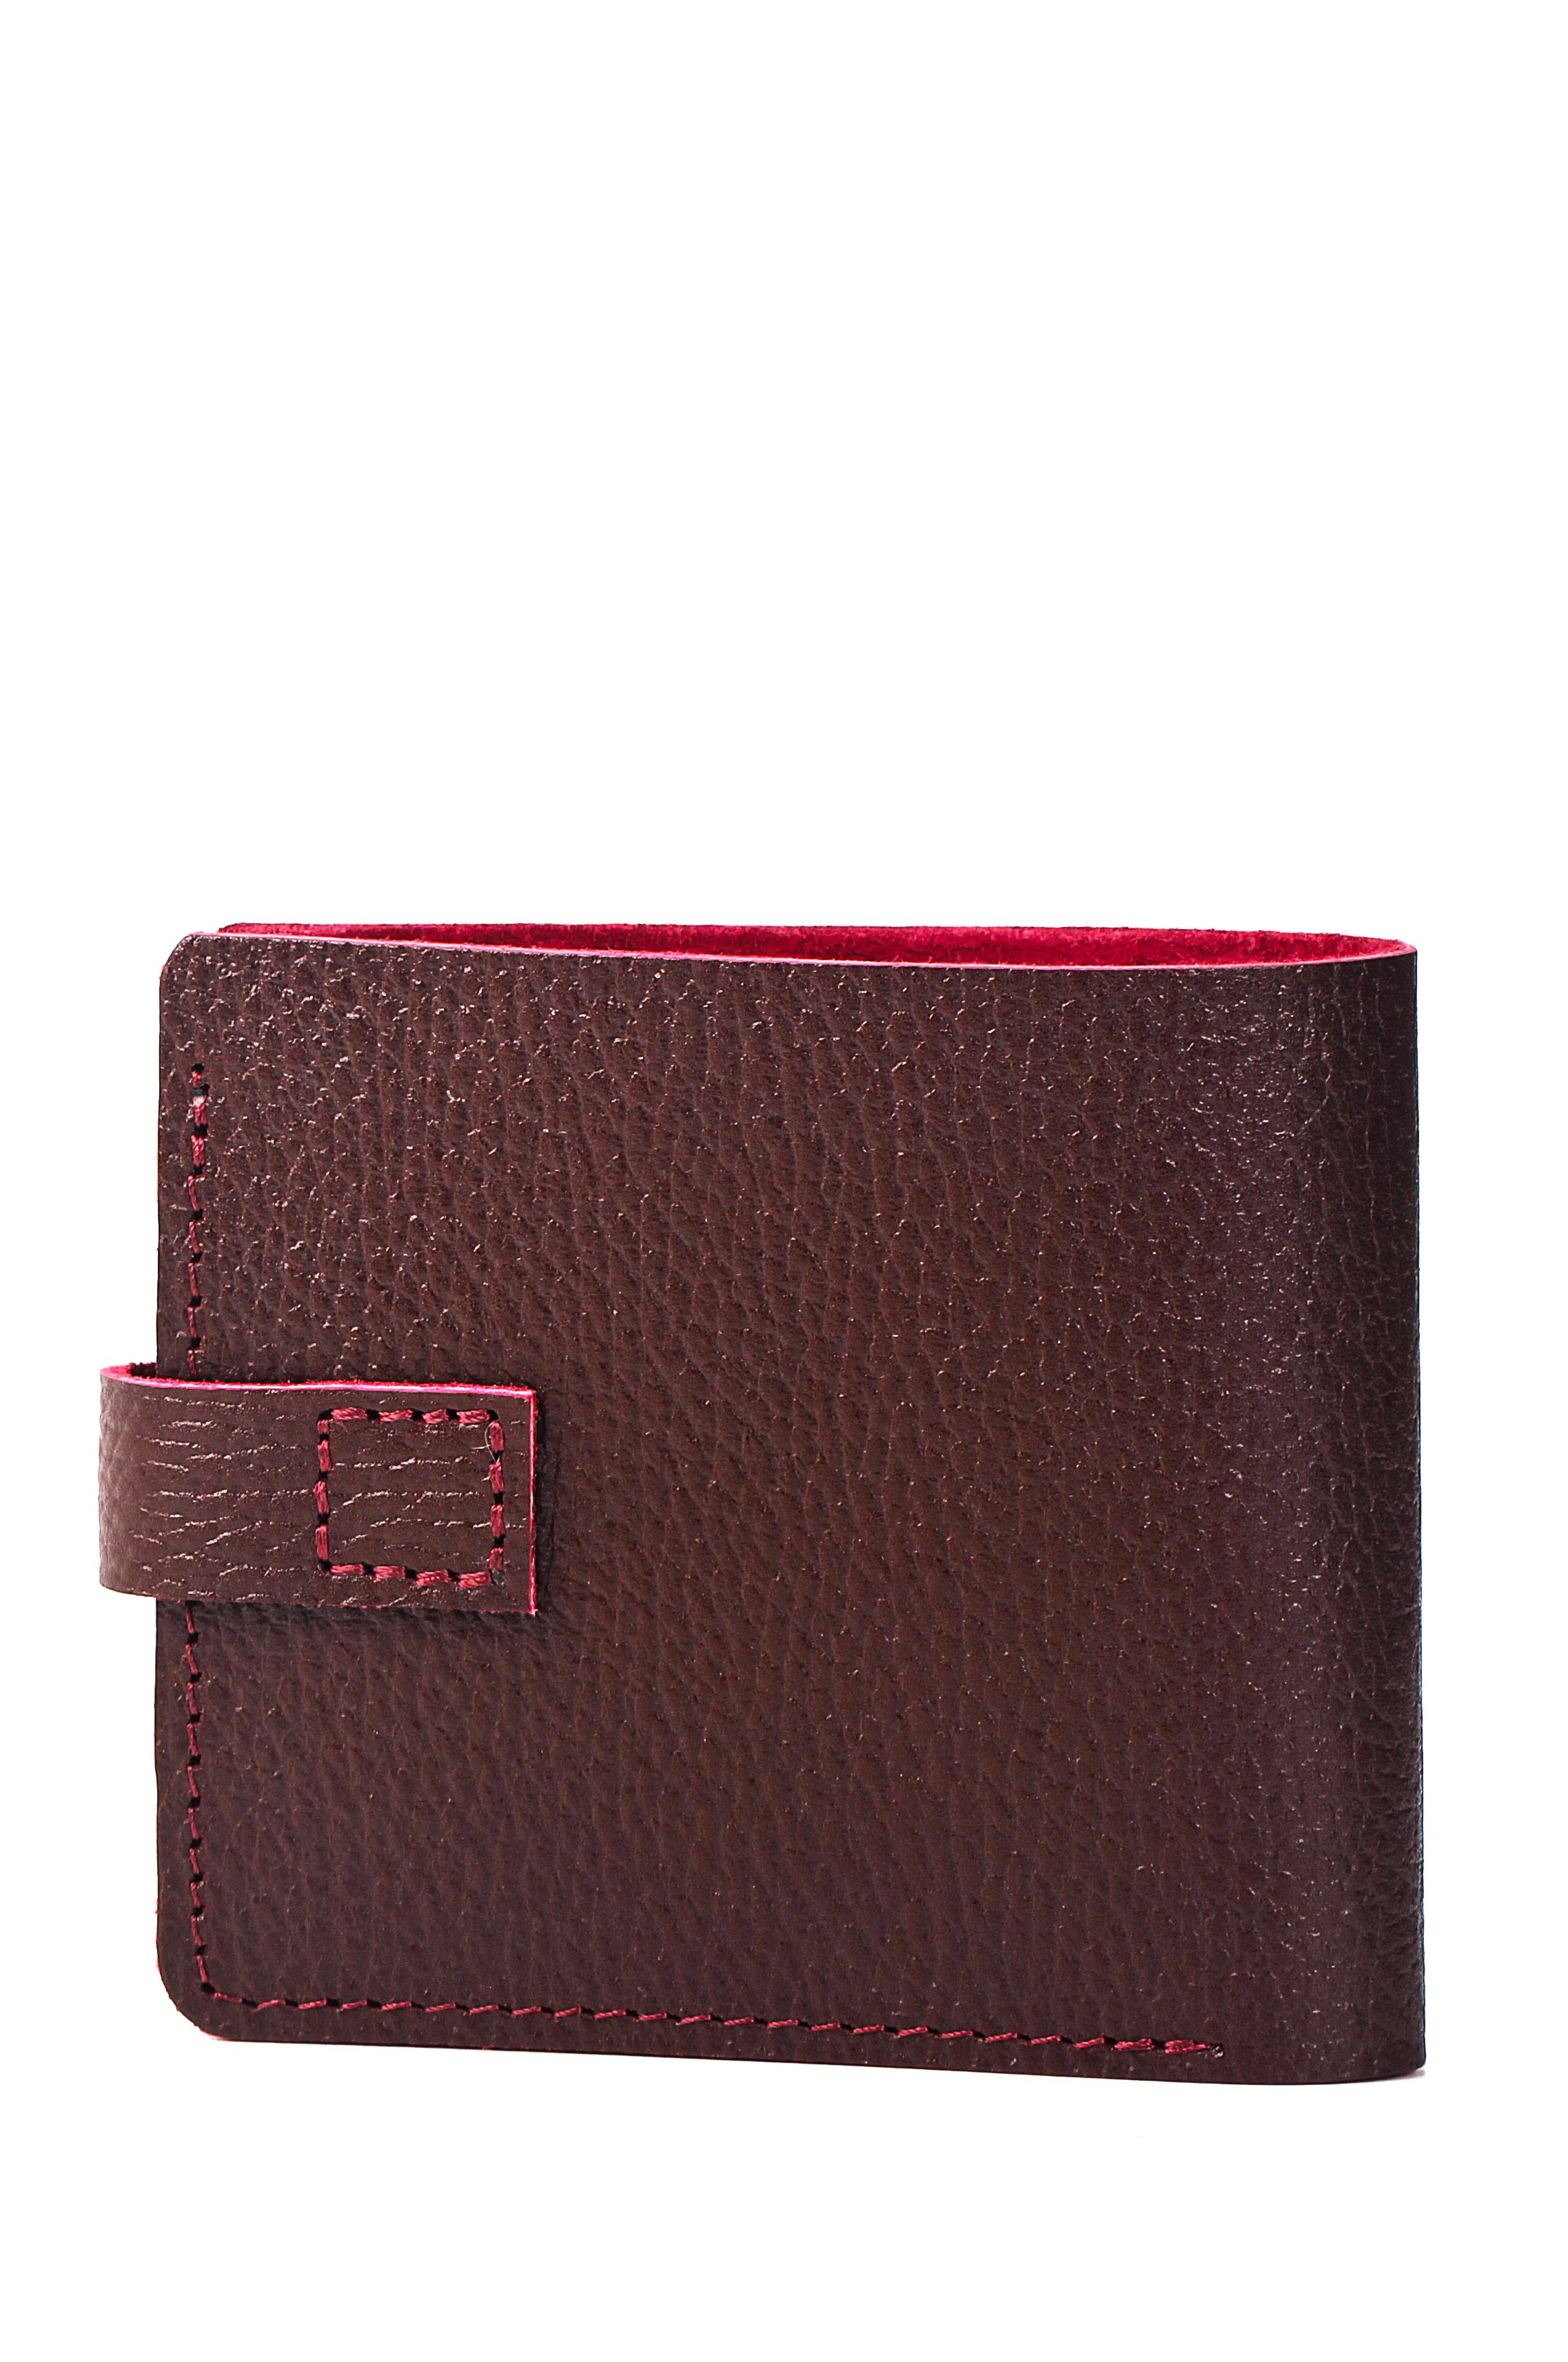 Женский кошелек темно-бордовый W005 burgundy grain